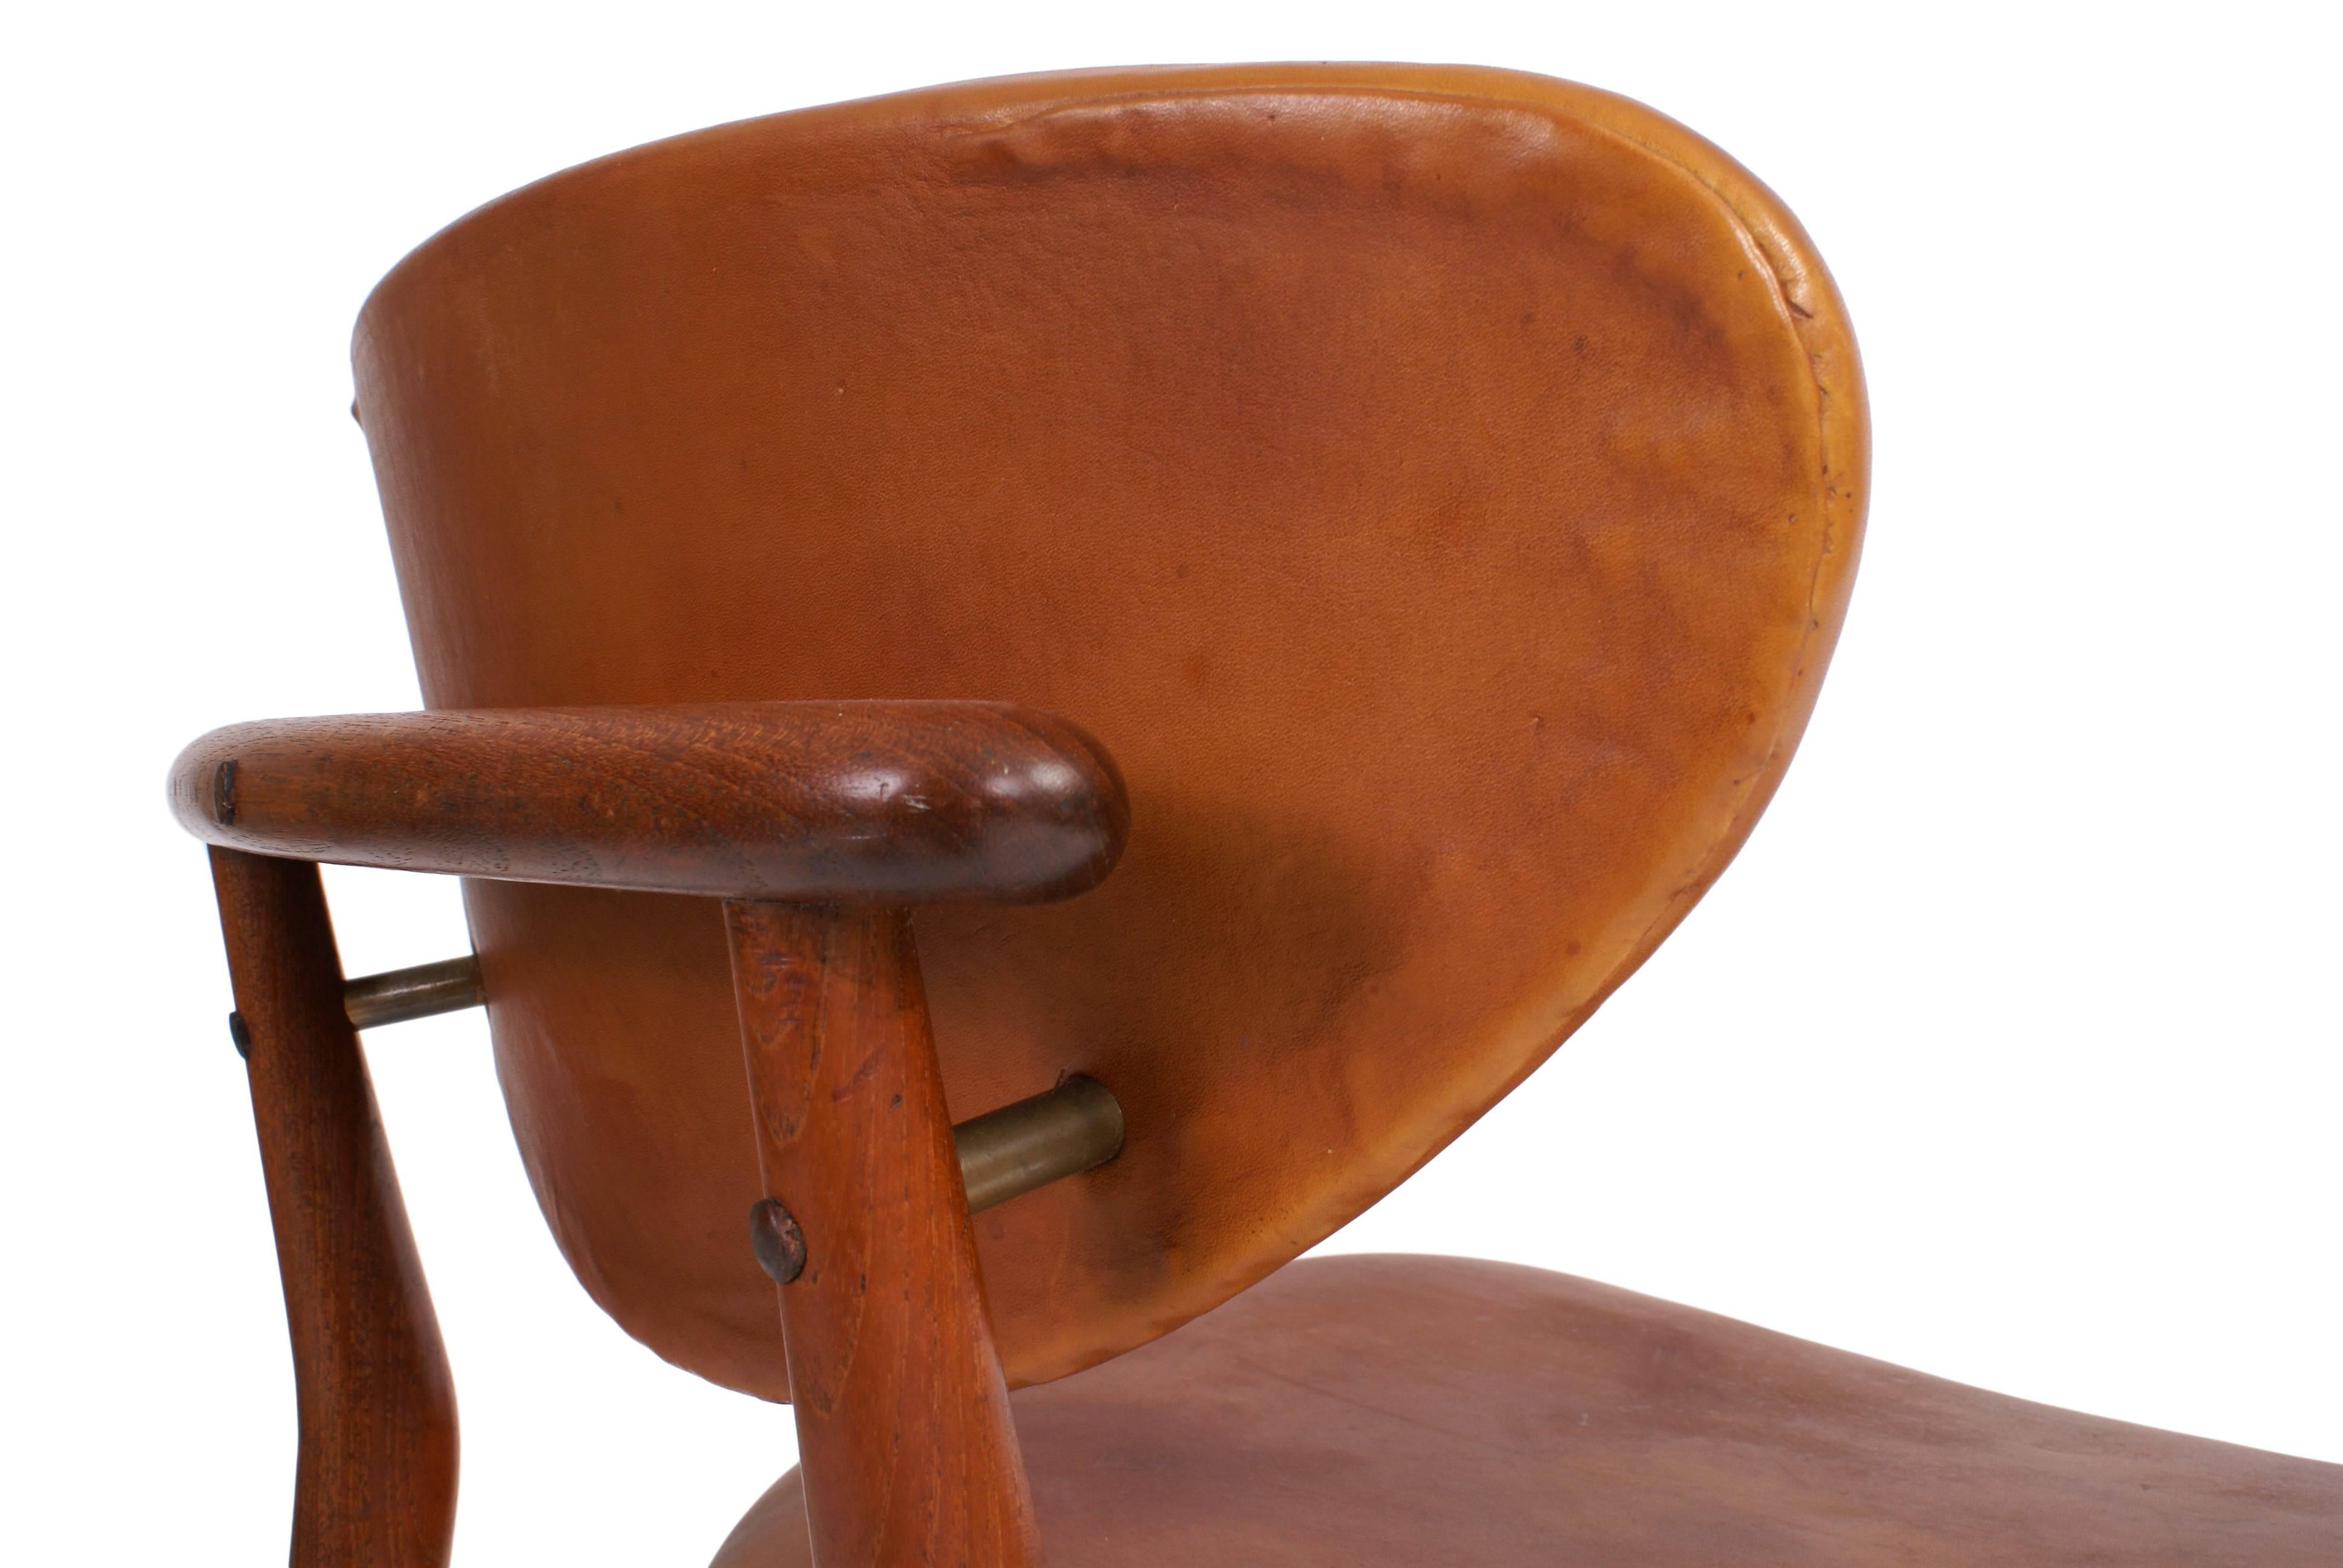 Scandinavian Modern Finn Juhl NV55 Chair for Niels Vodder in Teak and Natural Leather, 1955